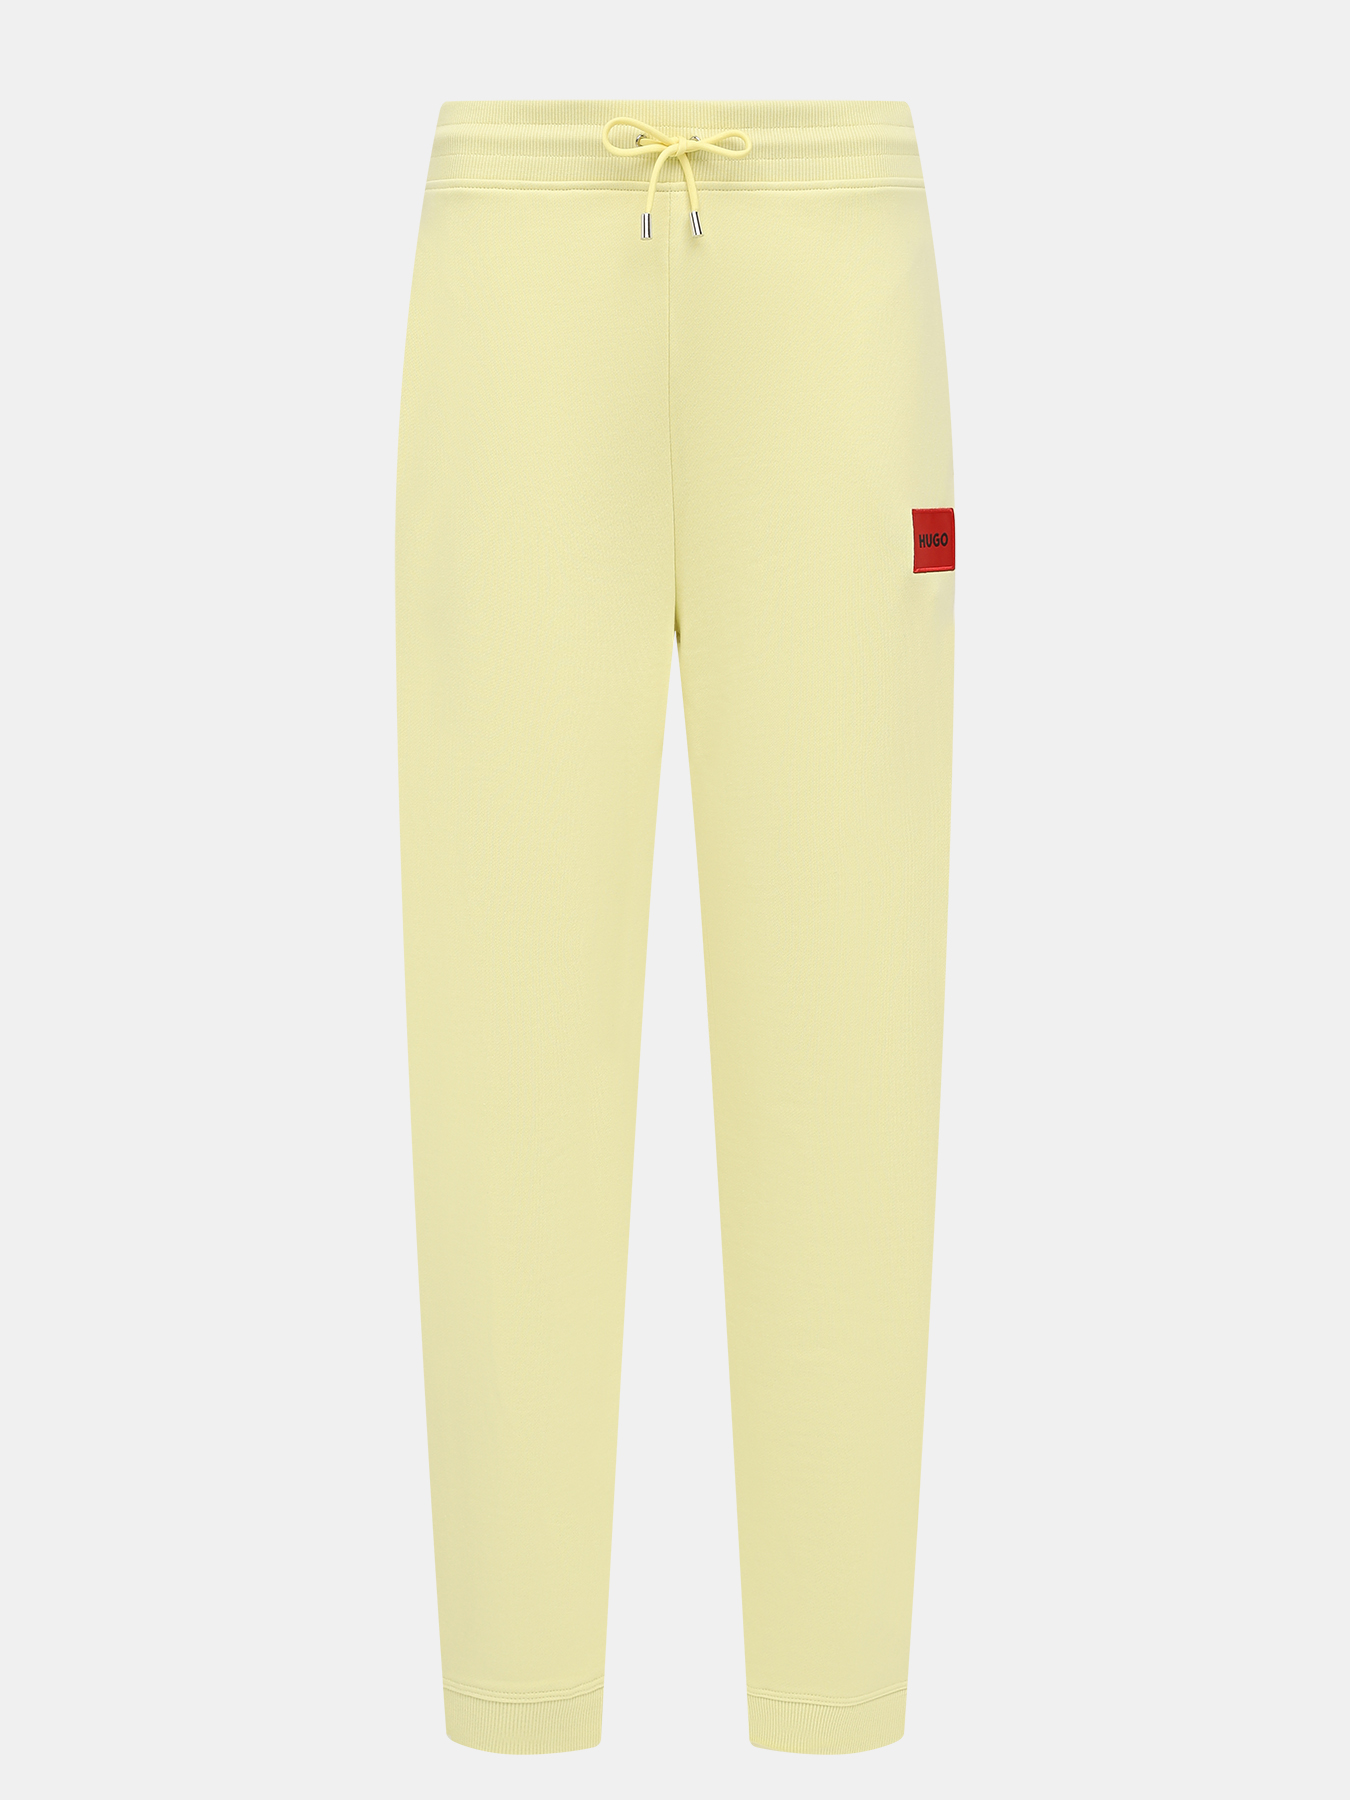 Спортивные брюки Dachibi redlabel HUGO 420595-043, цвет желтый, размер 44-46 - фото 1